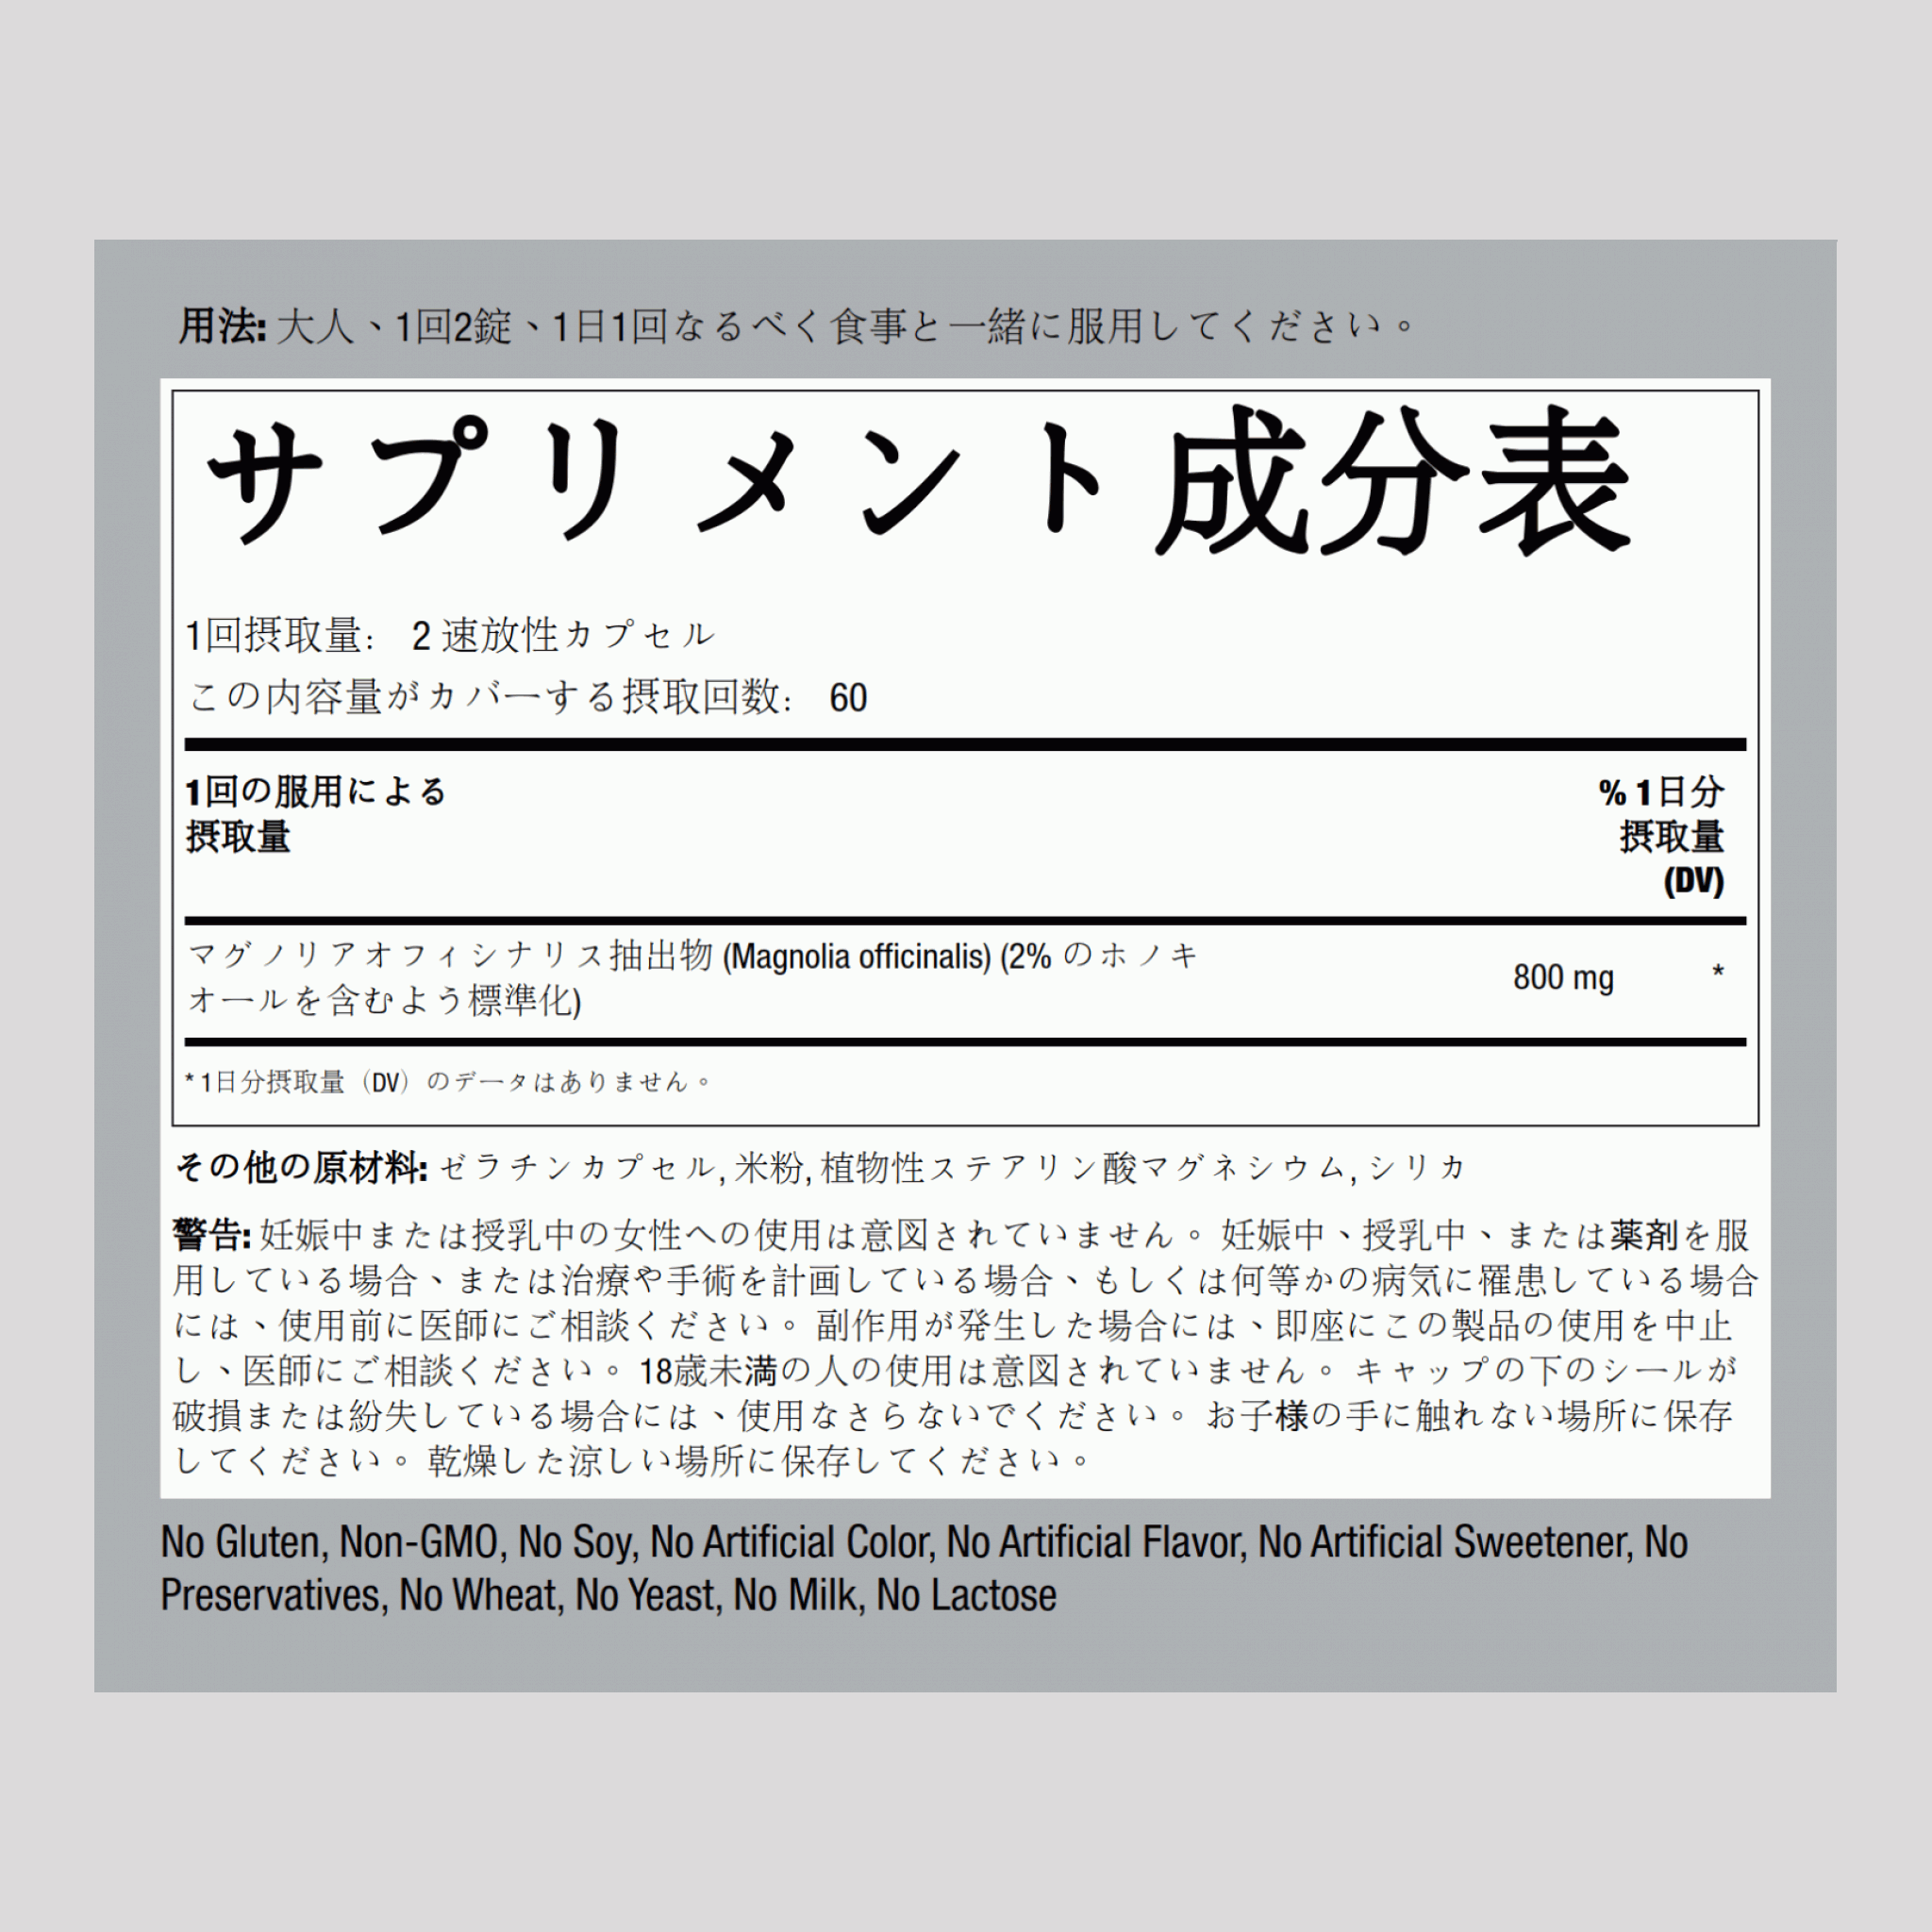 マグノリア樹皮 (コウボク) (ホオノキオール) 800 mg 120 速放性カプセル     